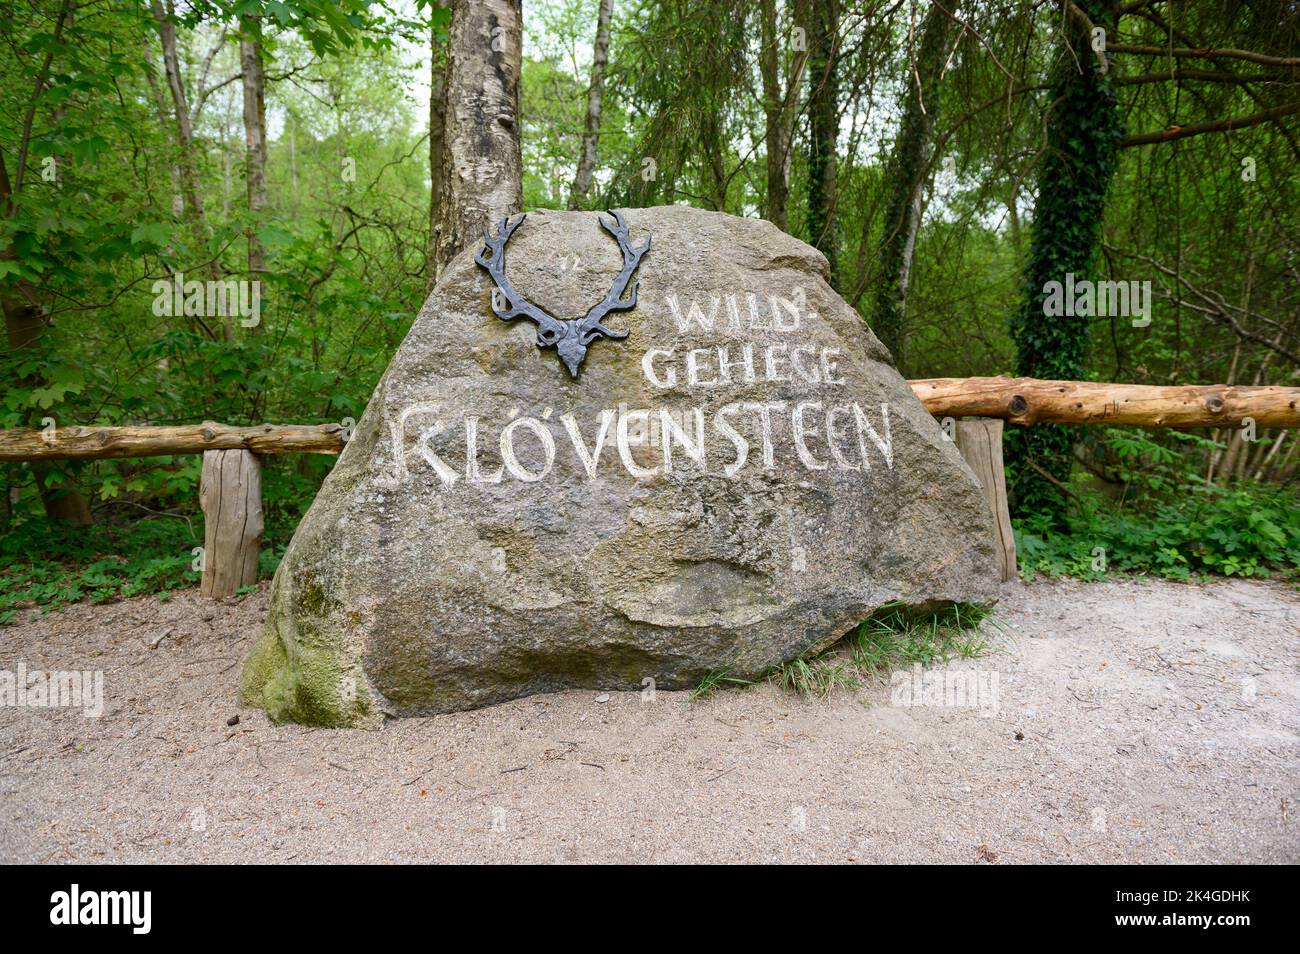 Hamburgo, Alemania. 07th de mayo de 2022. Una piedra con la inscripción 'Wildgehege Klövensteen' en la entrada del sitio. Crédito: Jonas Walzberg/dpa/Alamy Live News Foto de stock